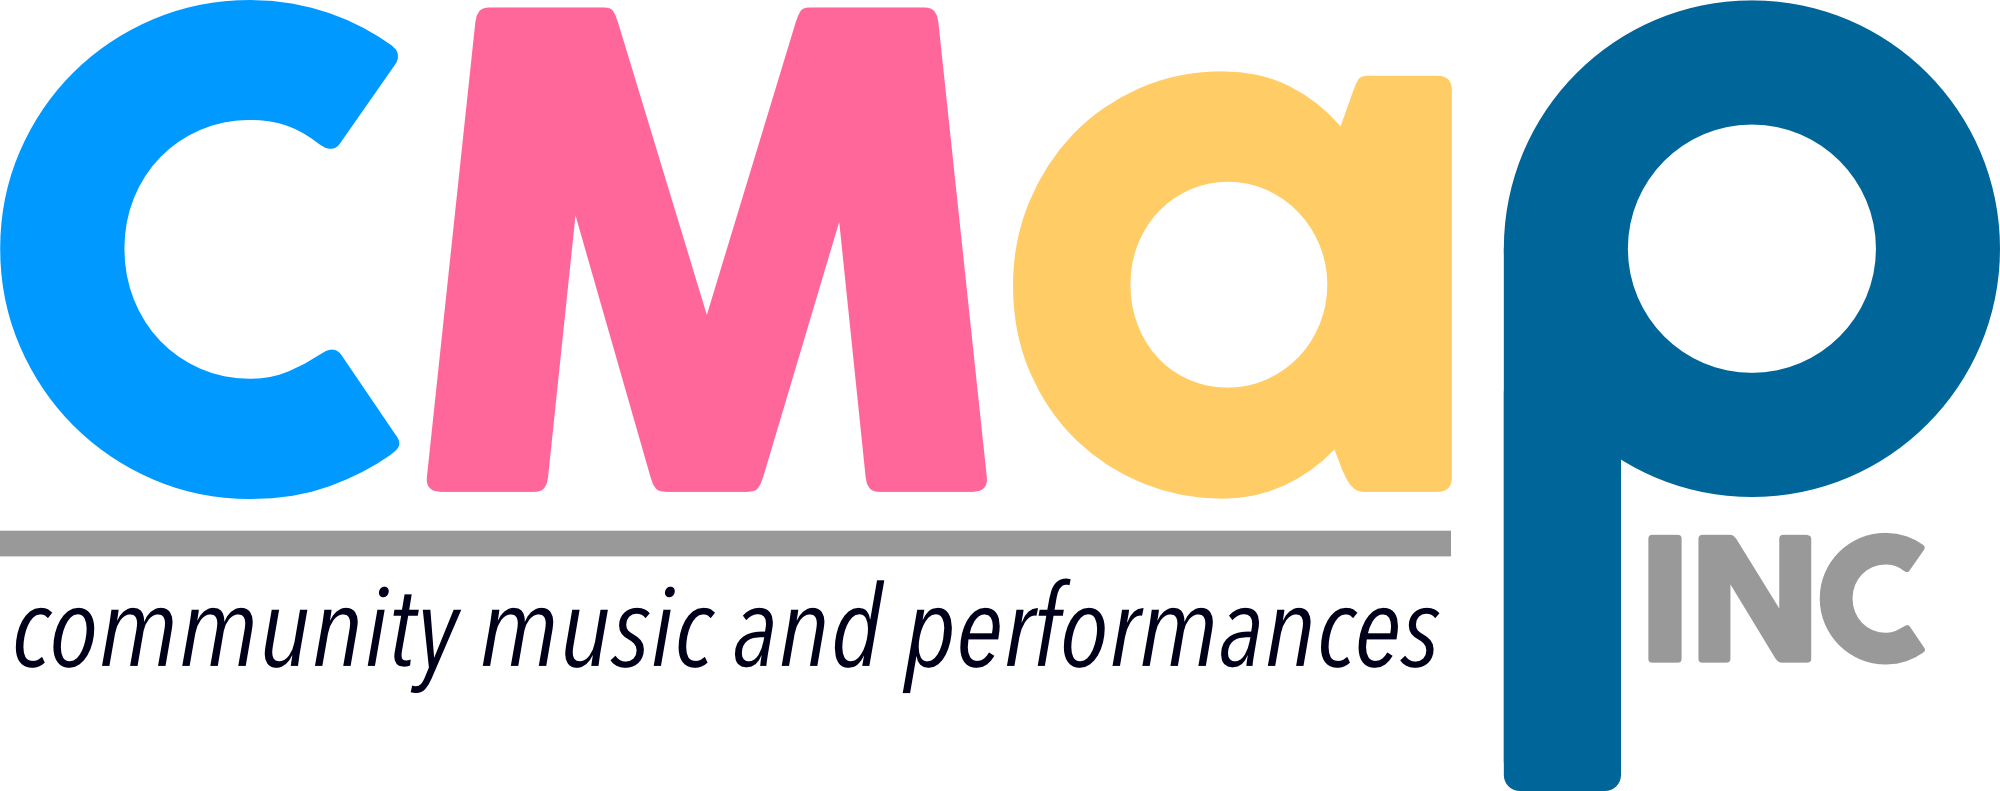 CMaP logo